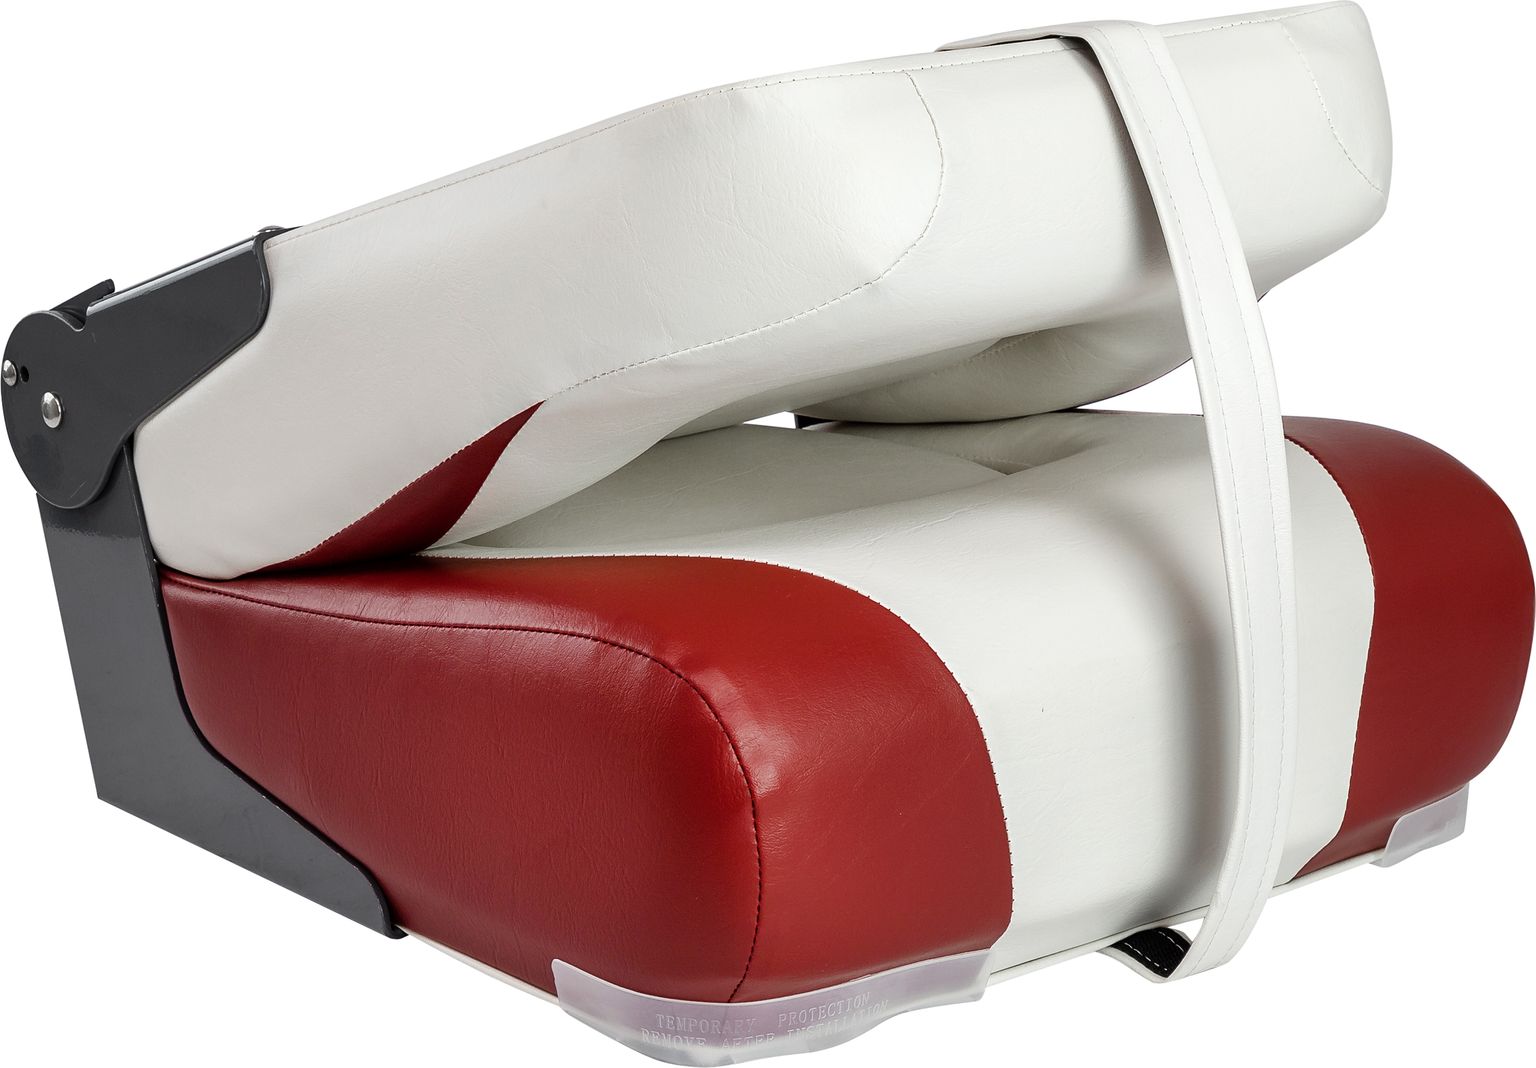 Кресло мягкое складное Craft Pro, обивка винил, цвет белый/красный, Marine Rocket 75185WR-MR - фото 2